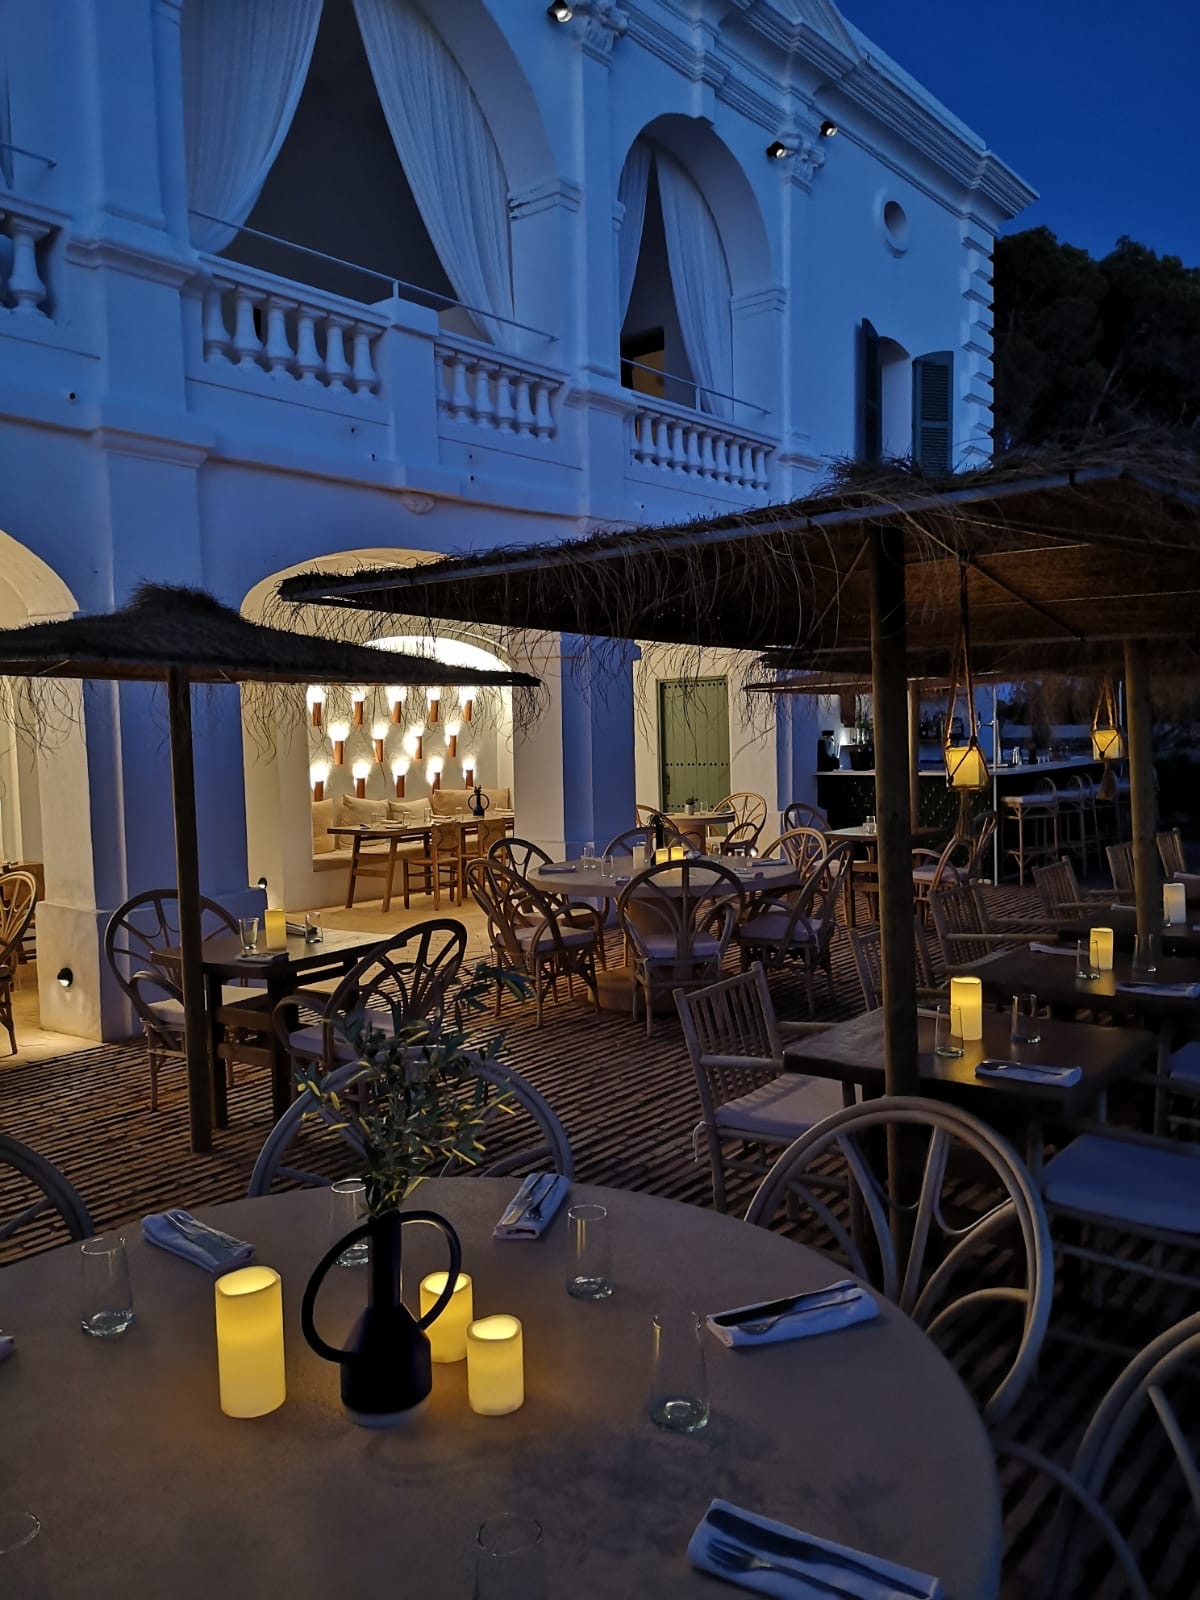 Hotel Menorca aux Baléares, la gamme Hemera utilisée pour éclairer les extérieurs